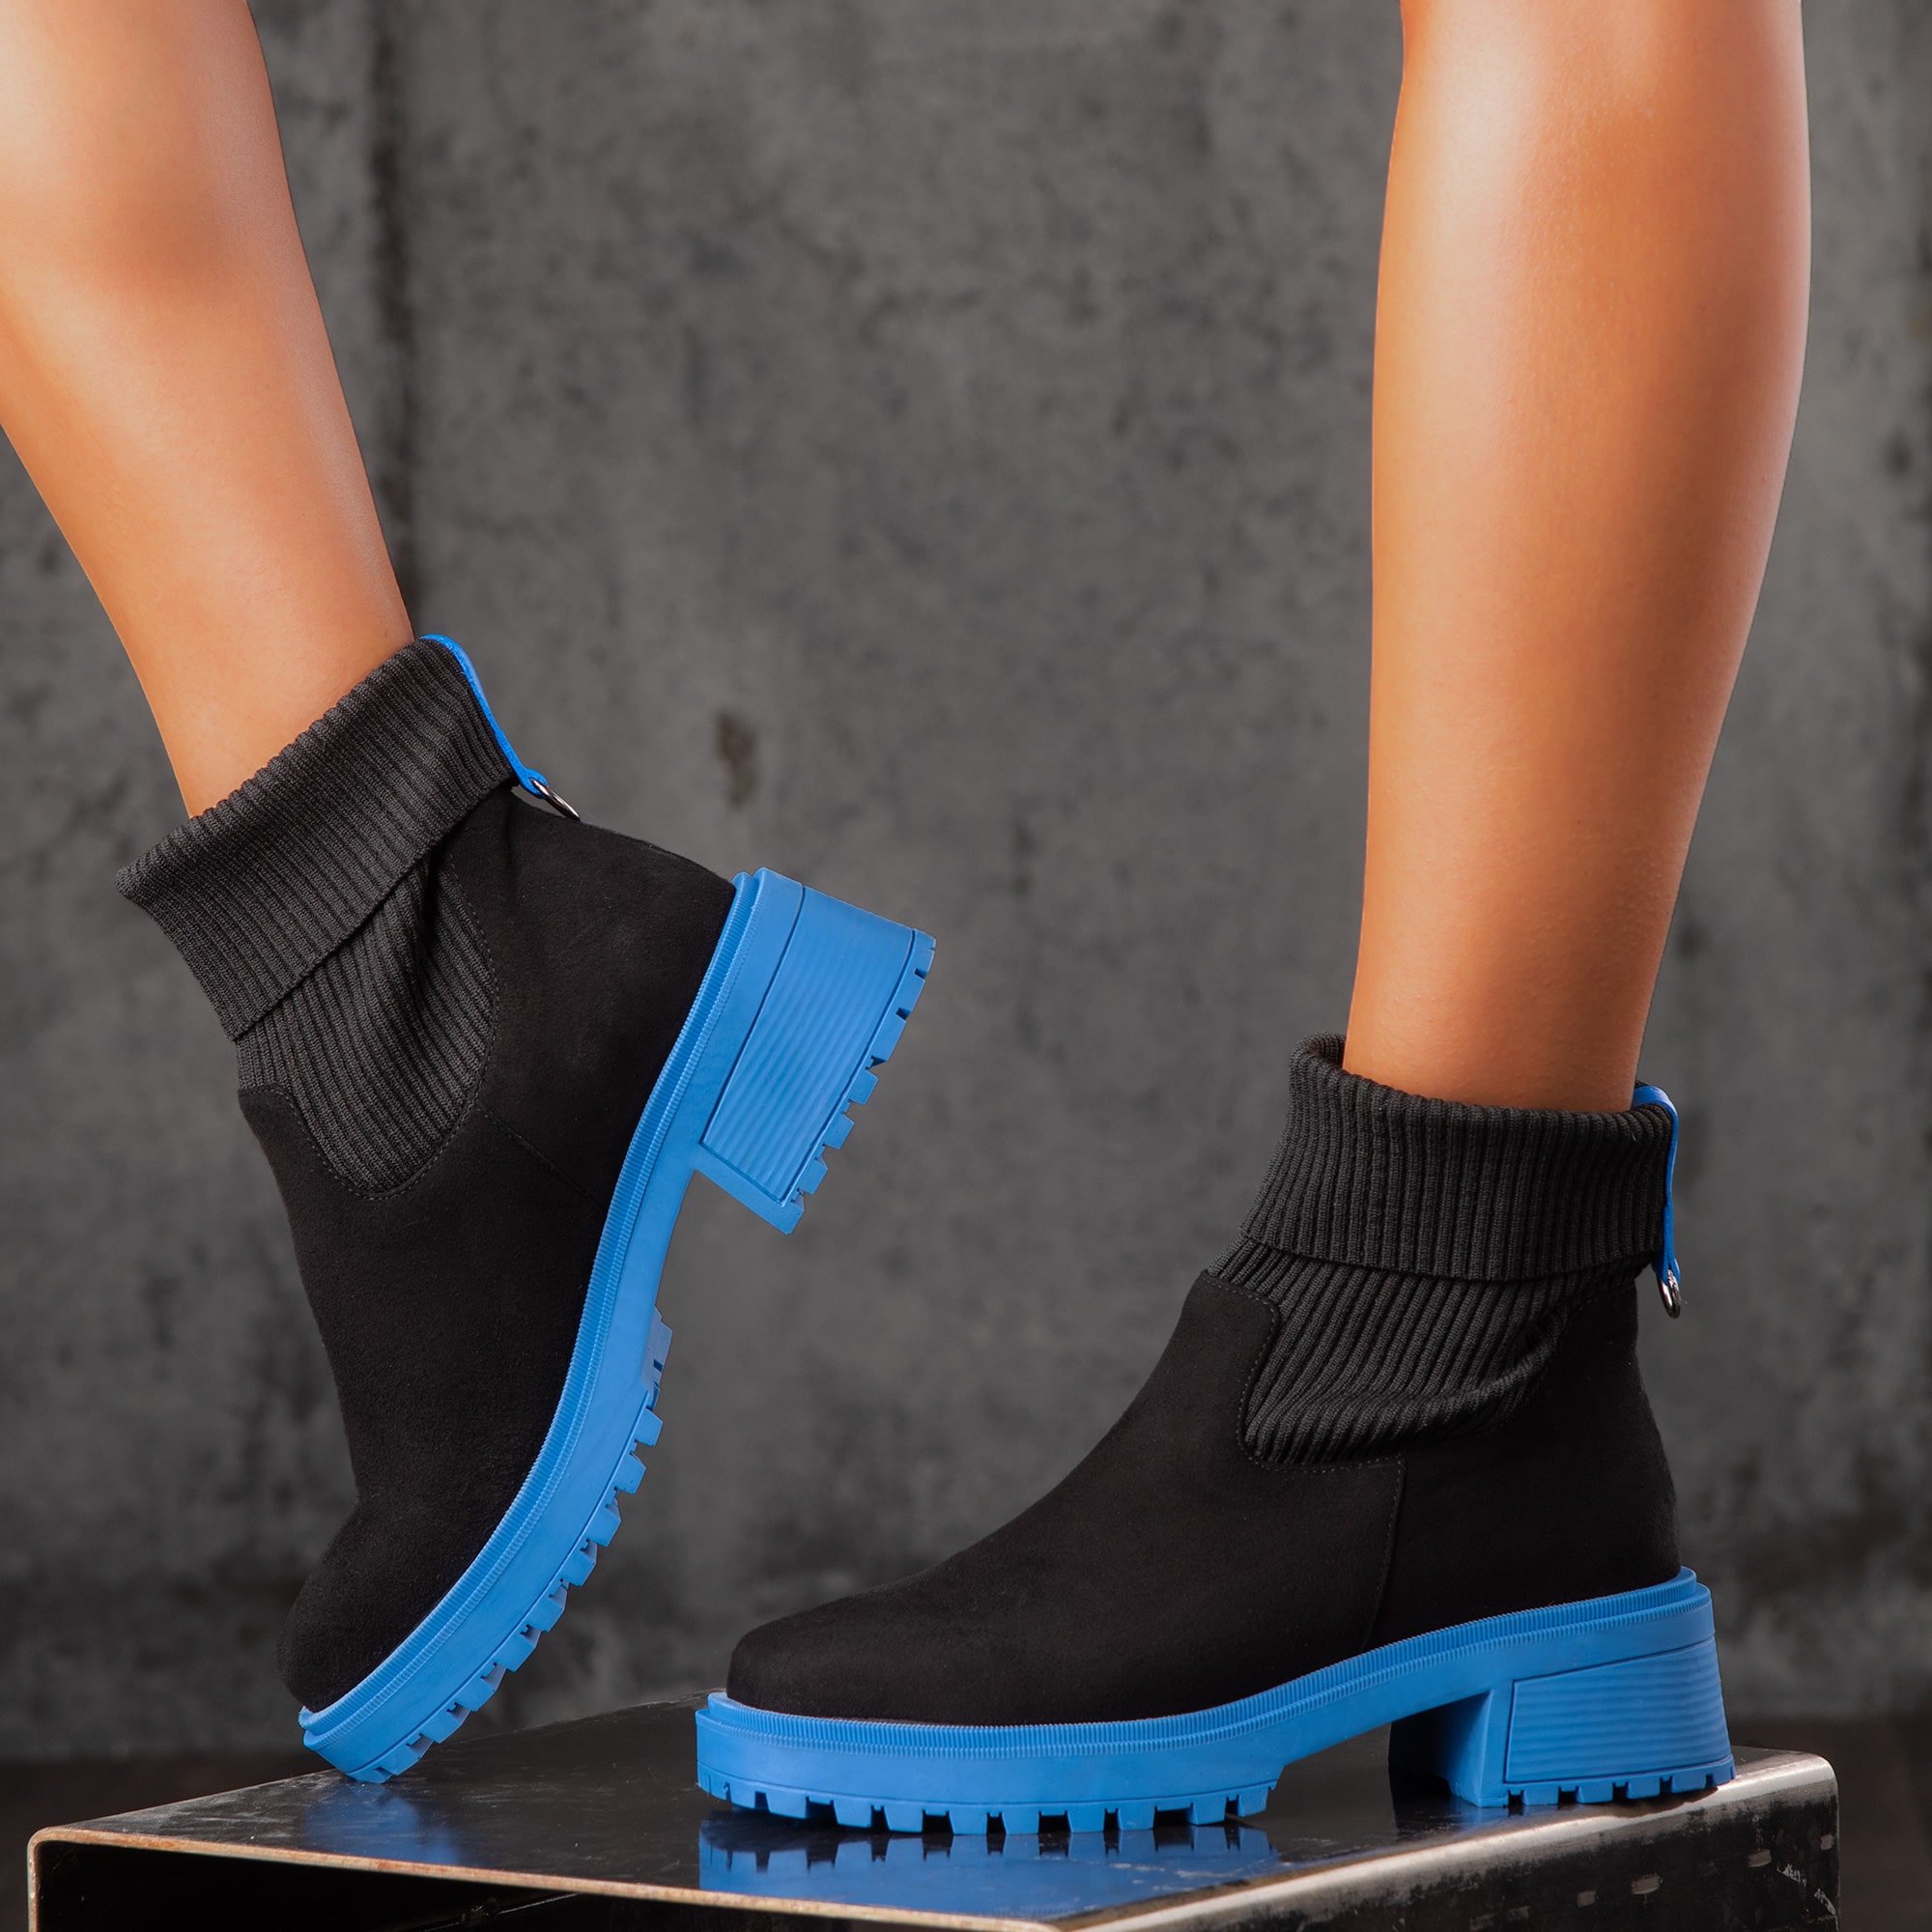 Guarda Sock Boots, Blue Color